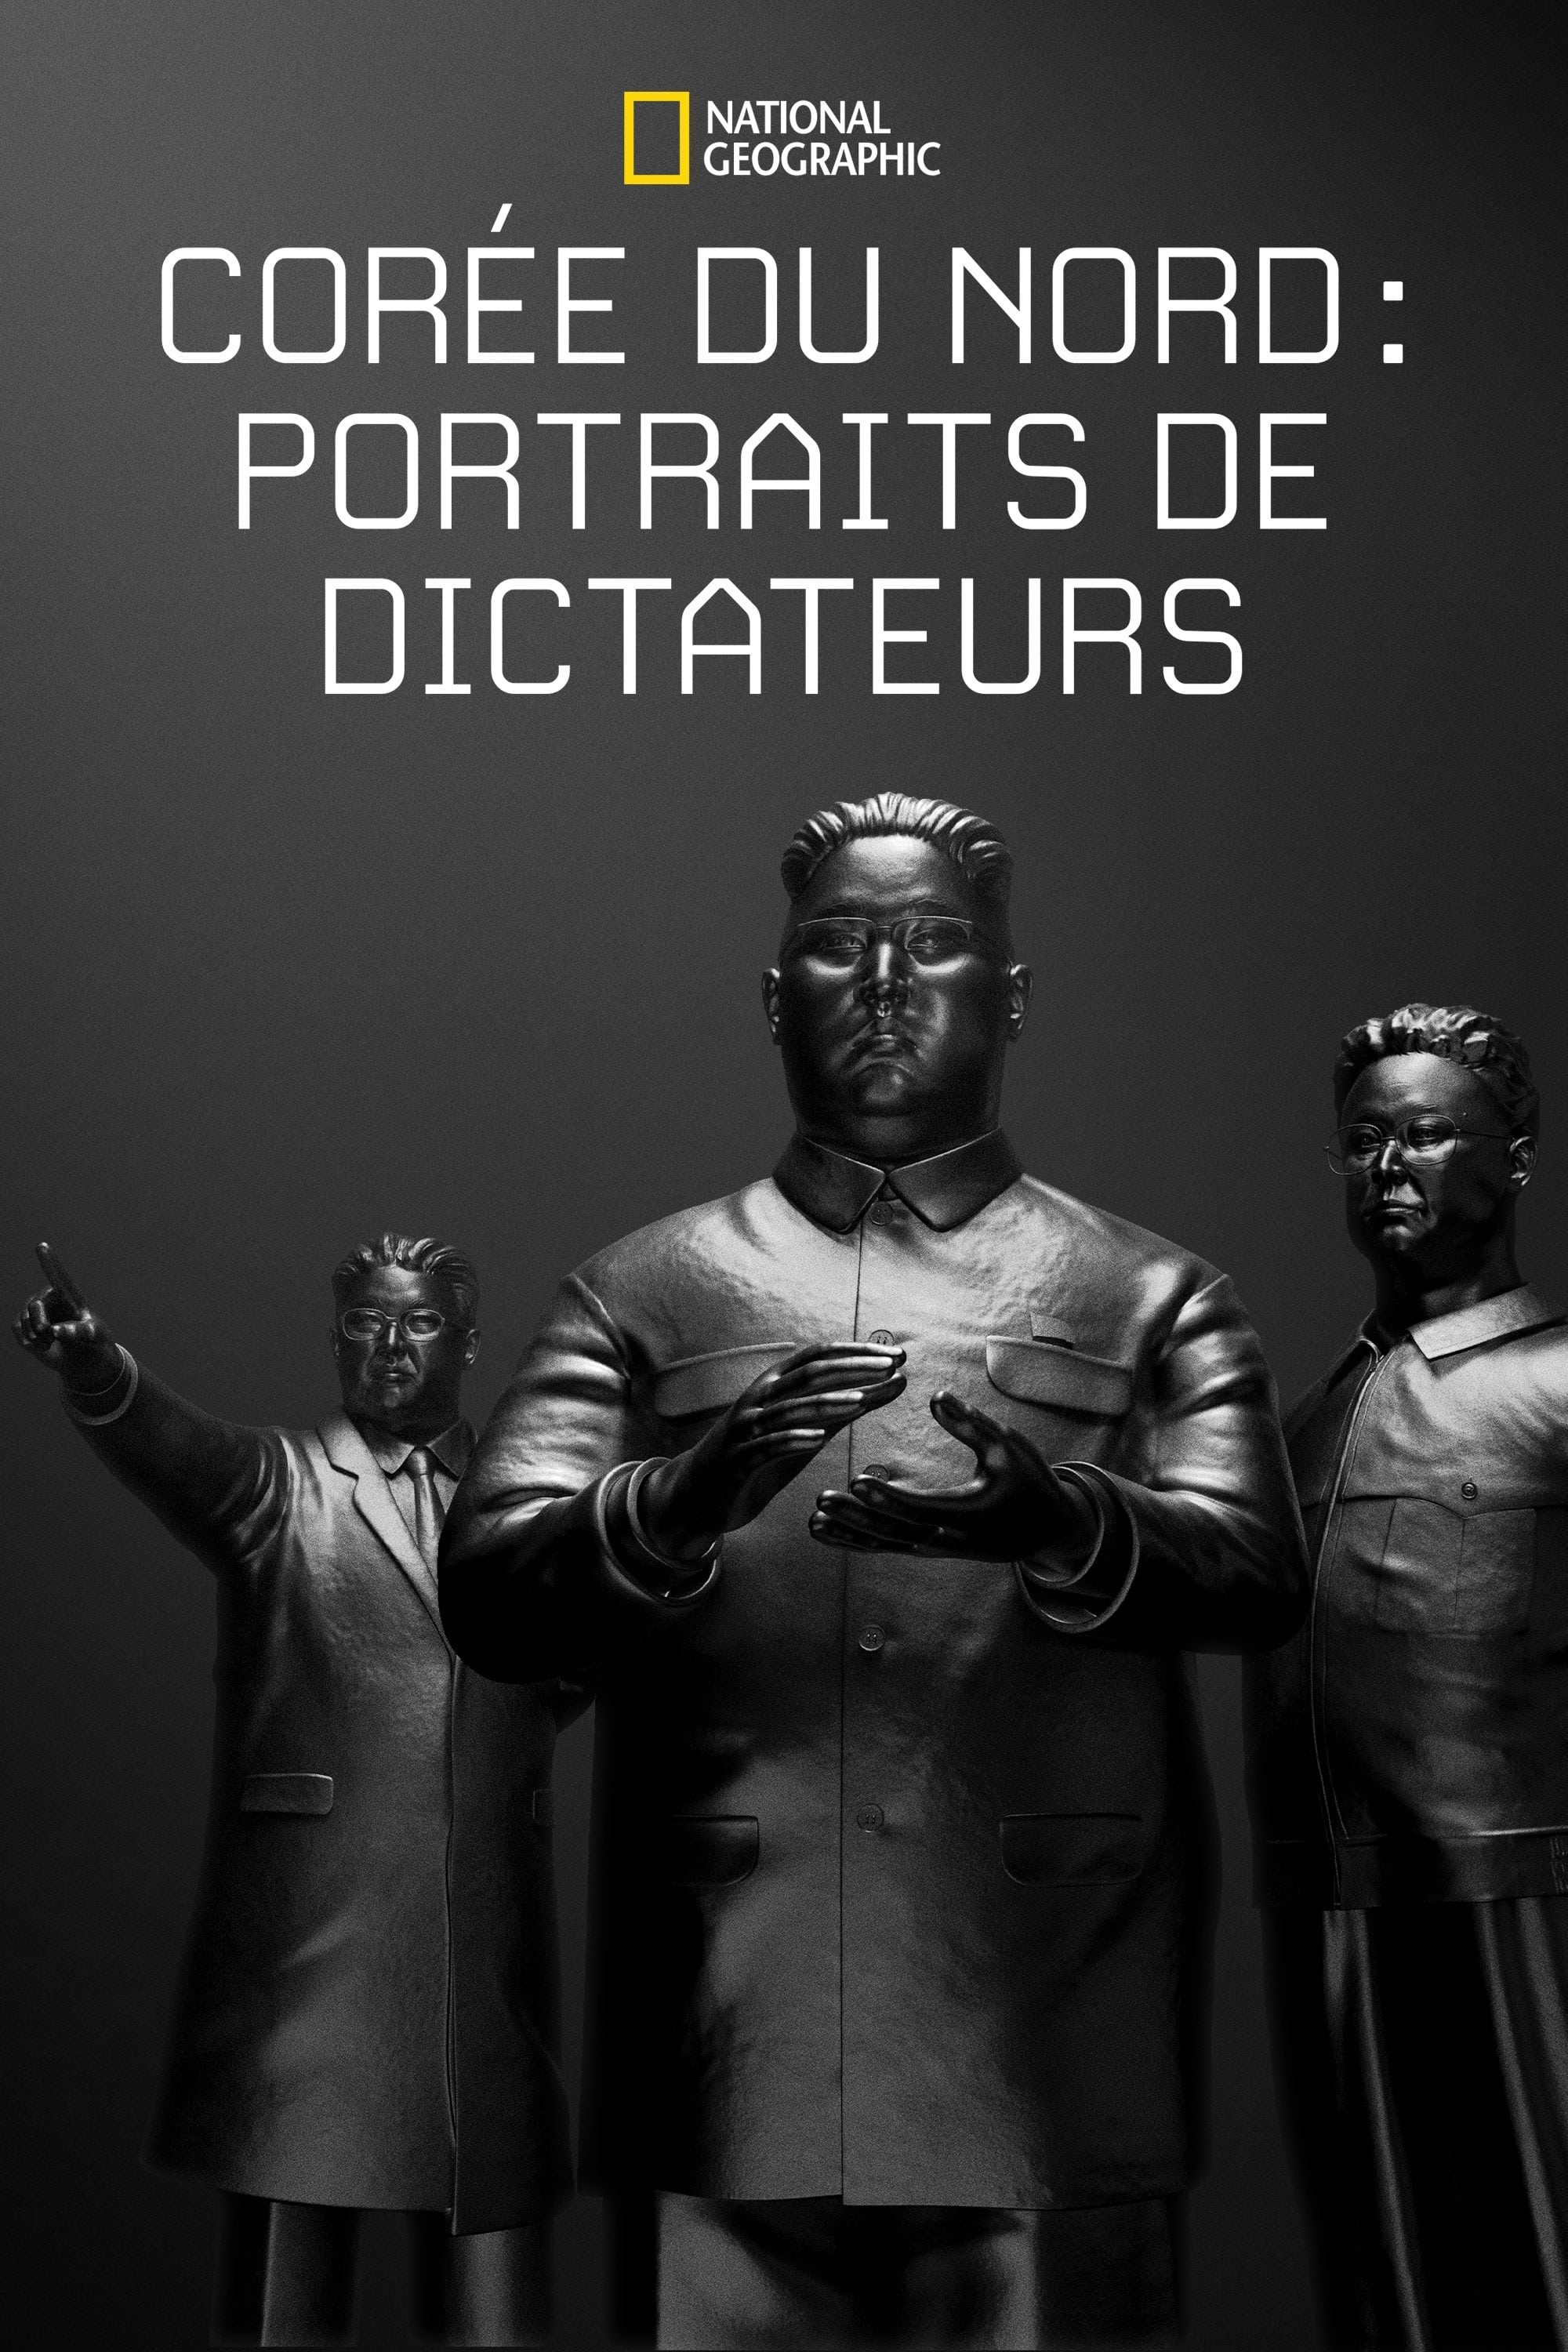 Corée Du Nord: Portraits de dictateurs